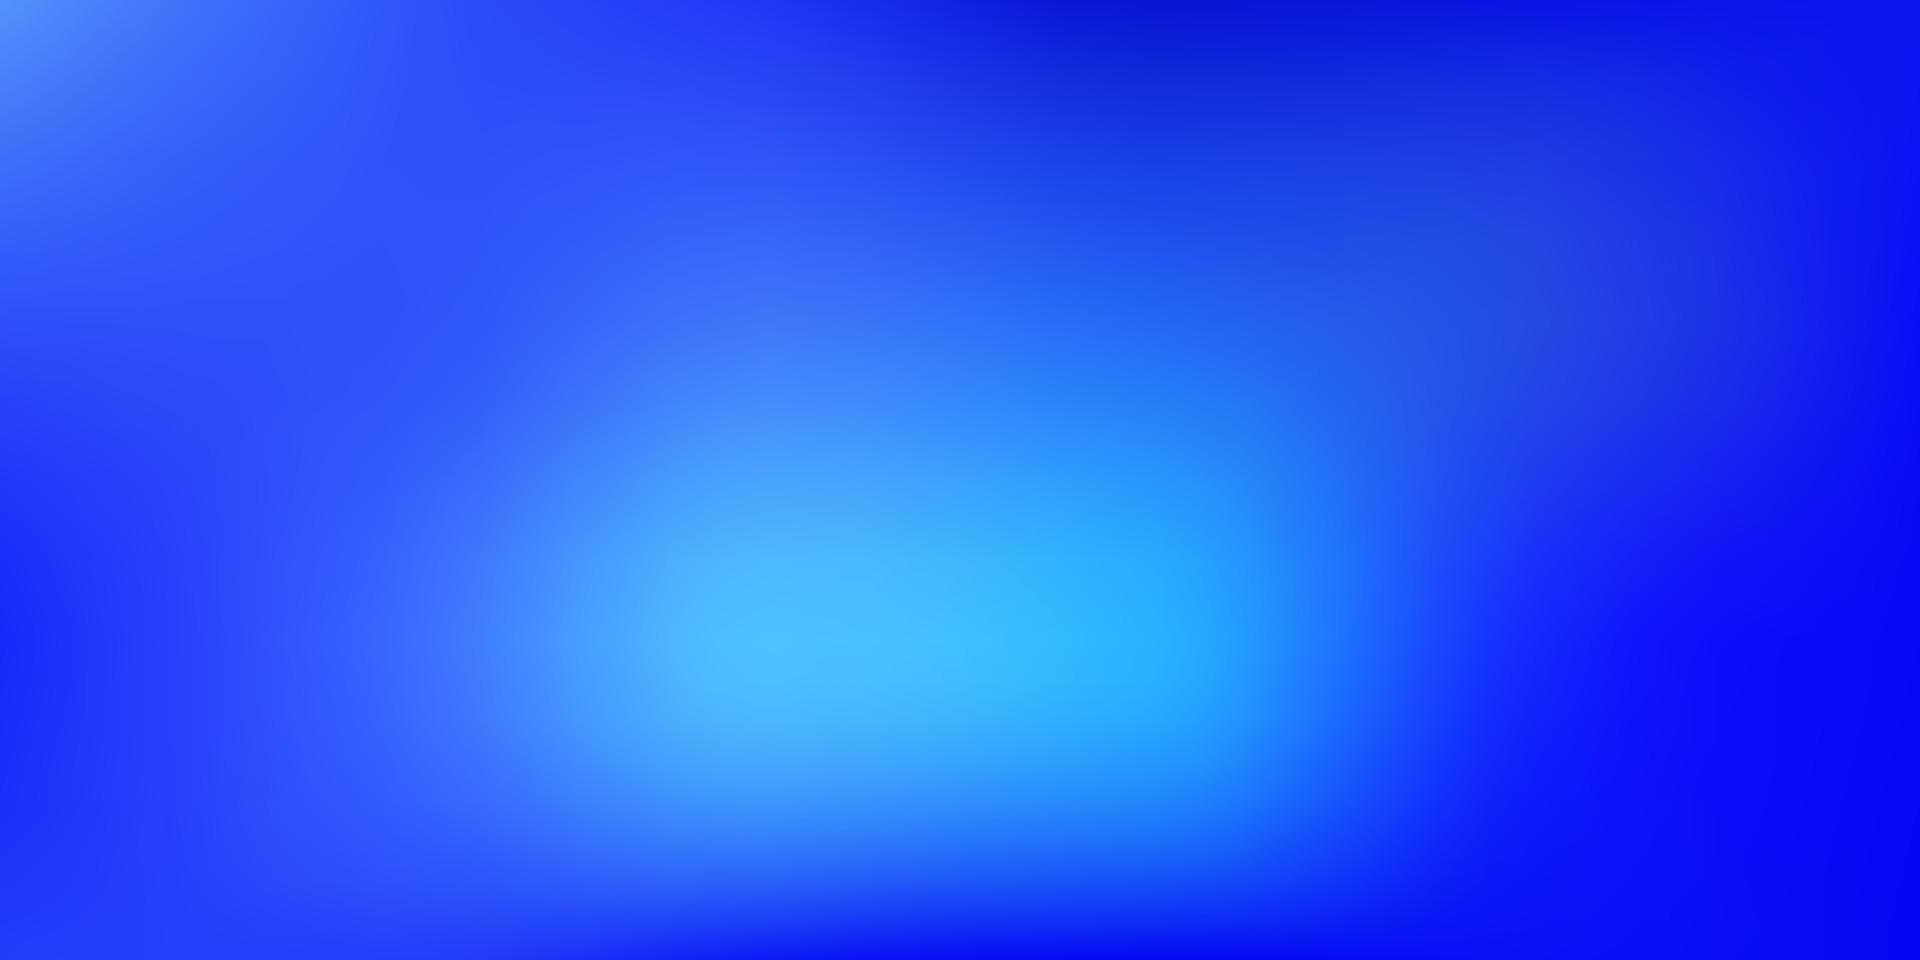 Light BLUE vector blurred texture.